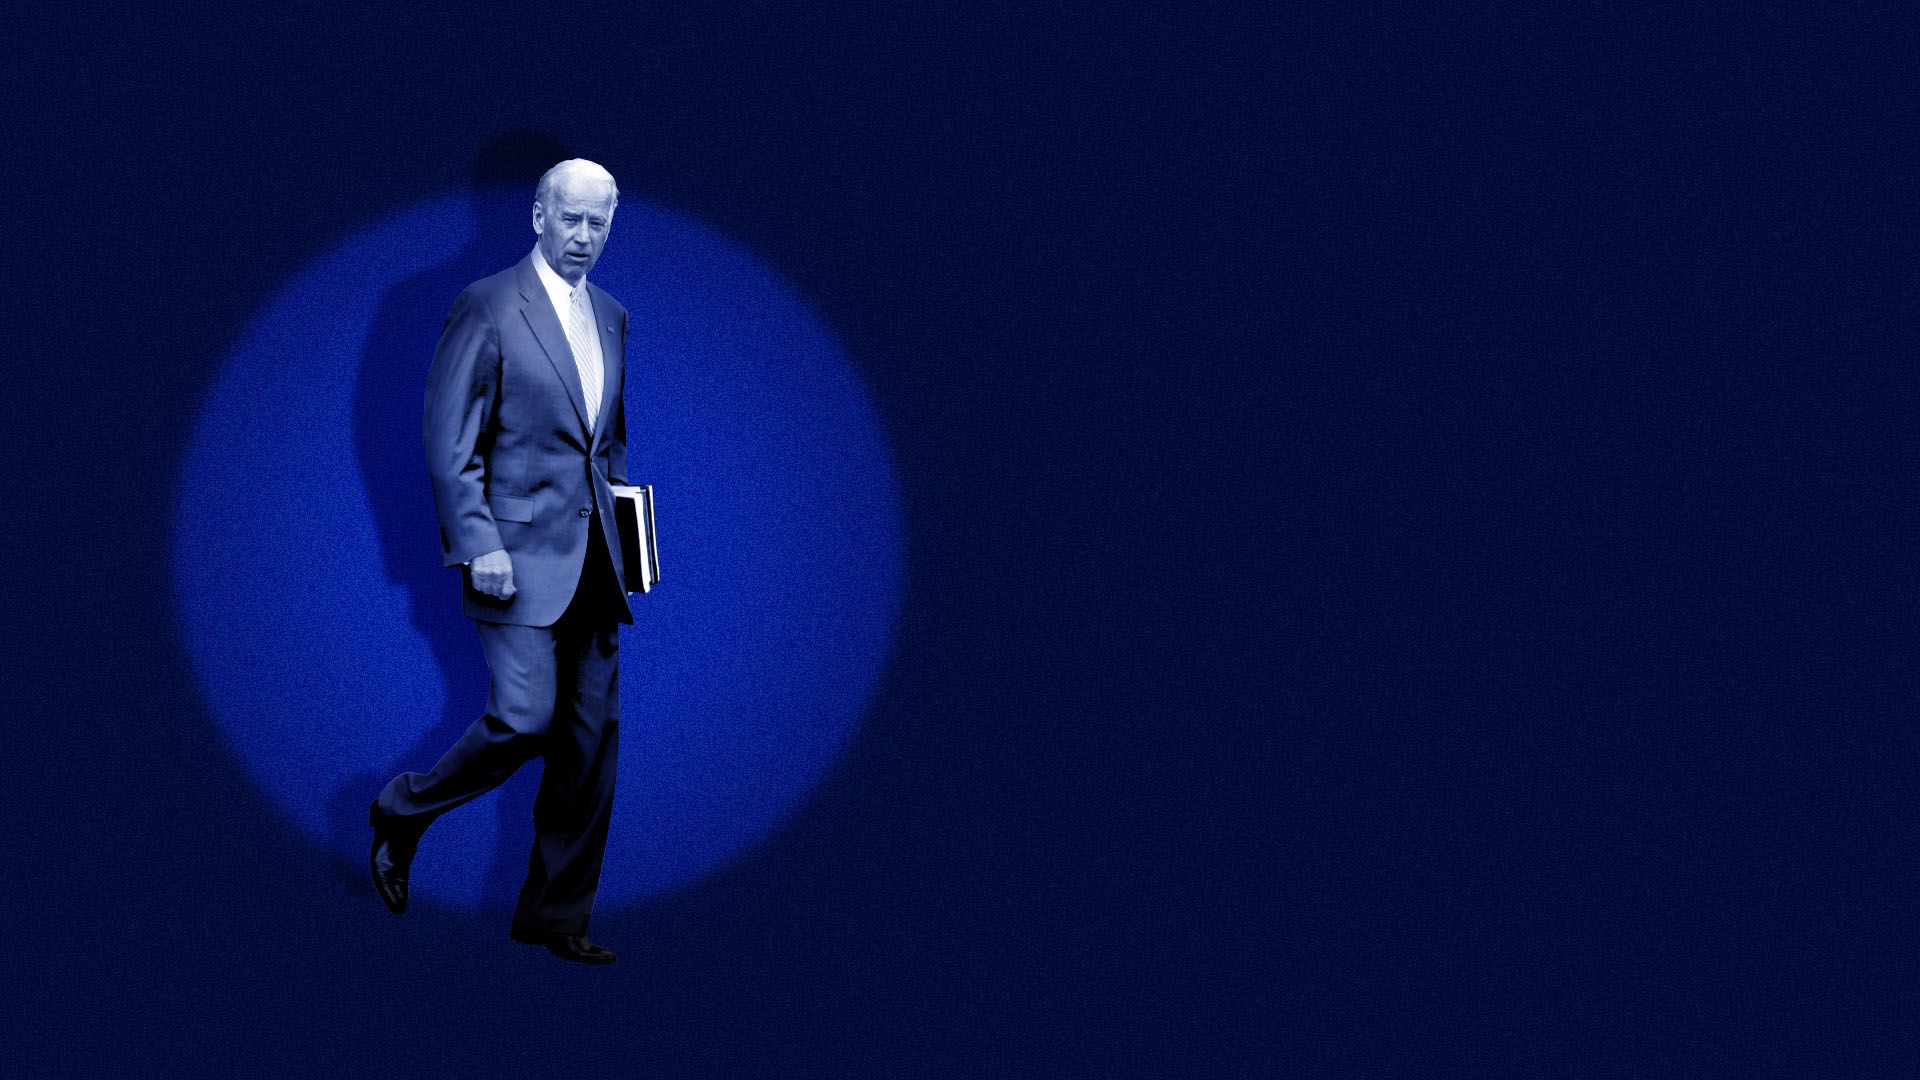 Illustration of Joe Biden caught in a blue spotlight